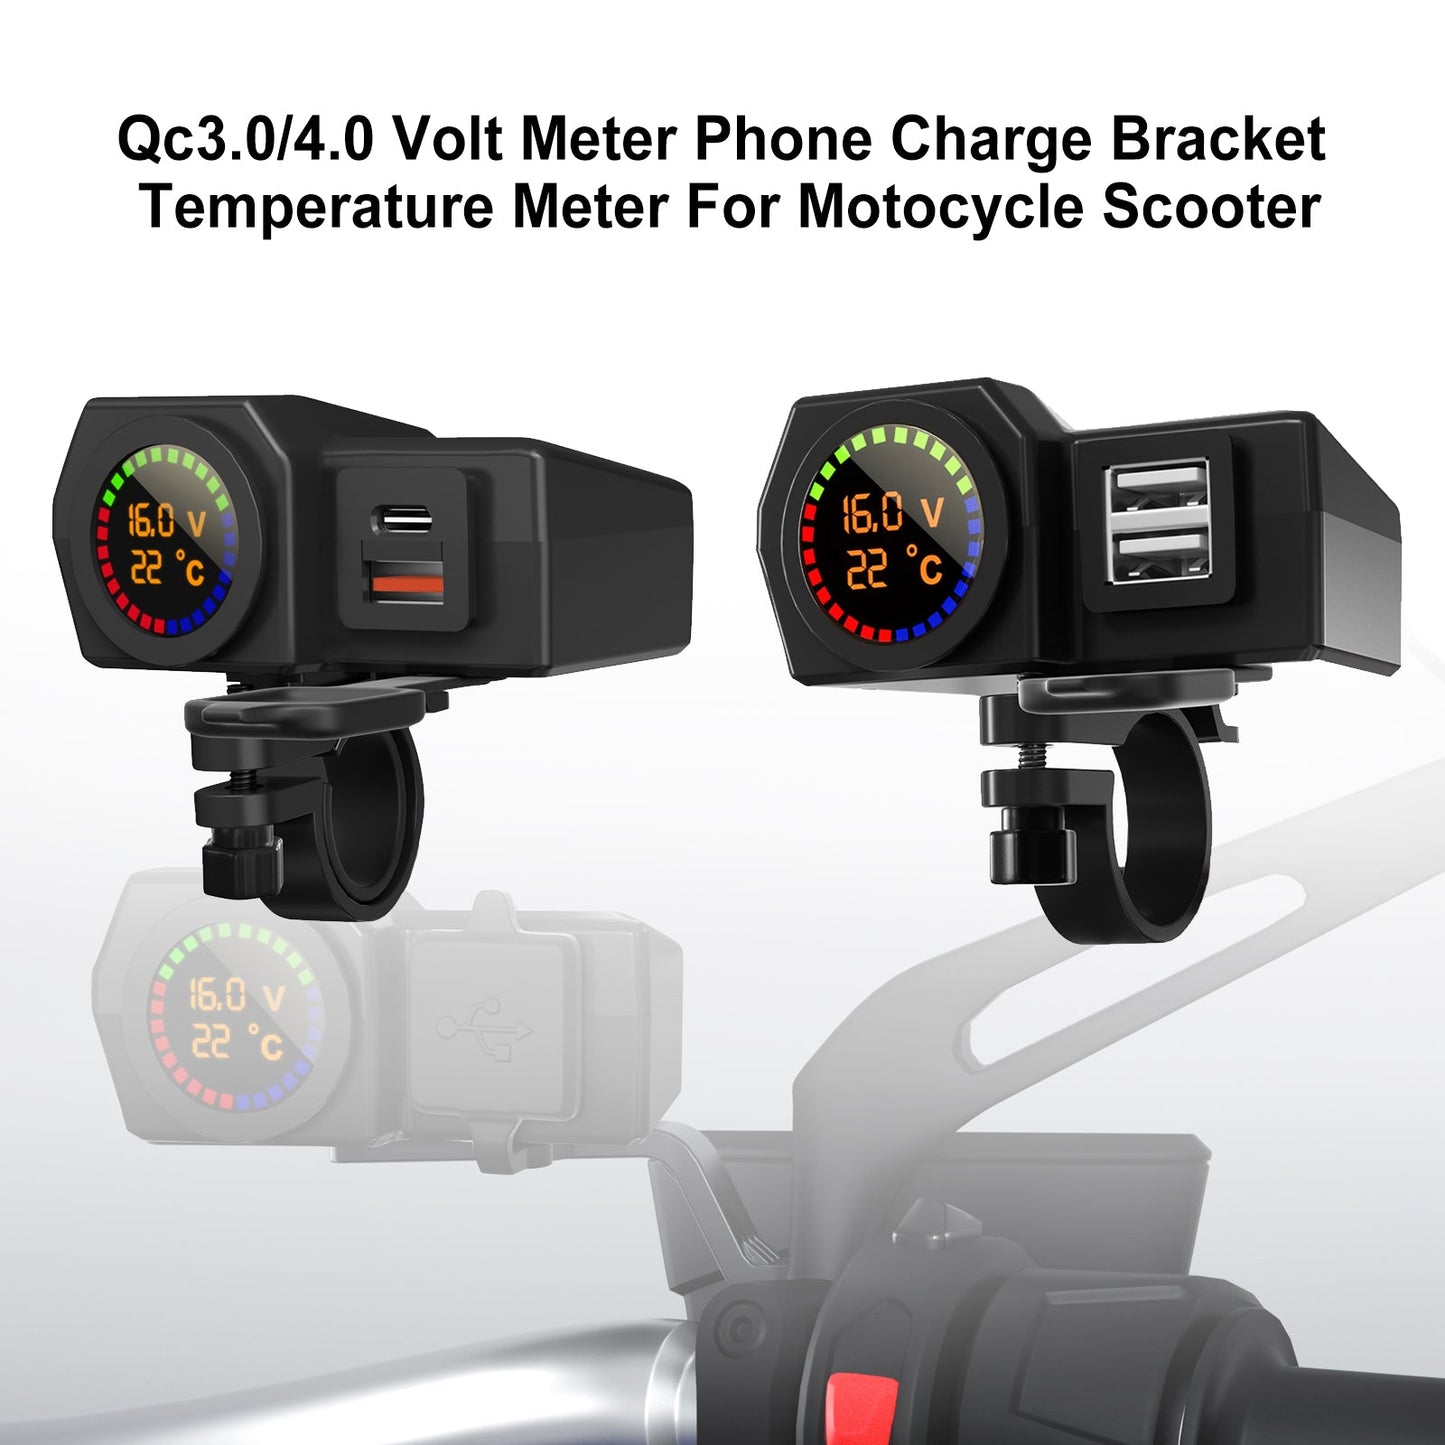 Qc3.0 Volt Messmesser Telefonladungshalterungsmessgerät für Motocycle Scooter Blackb Generikum